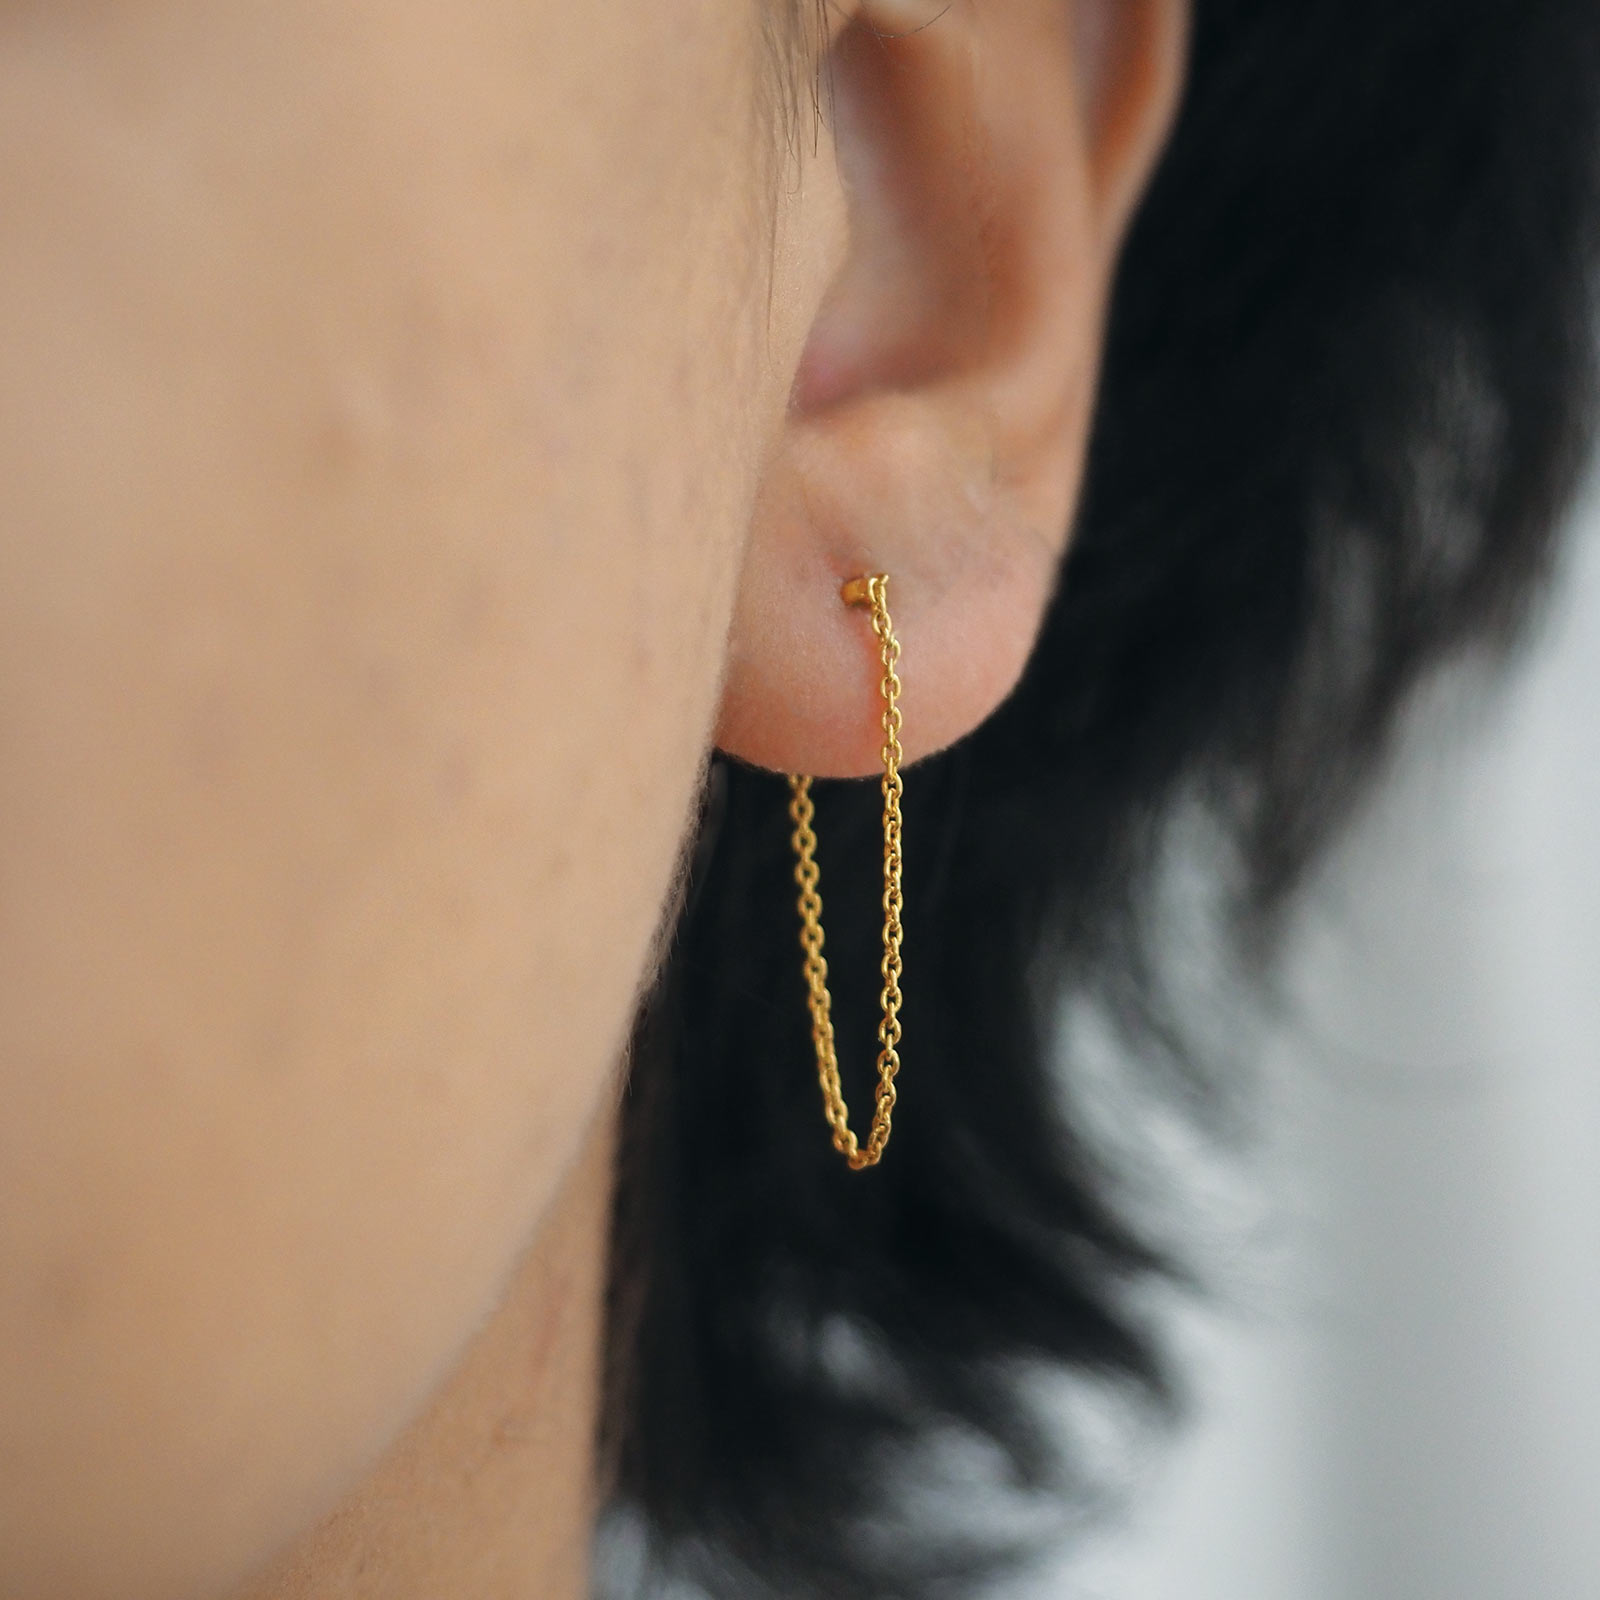 Gold Chain Earring Designs : शादी के मौके पर खरीदें गोल्ड चेन ईयरिंग्स के  बेहद खूबसूरत डिजाइन्स, देगा रॉयल और क्लासी लुक – Bloggistan